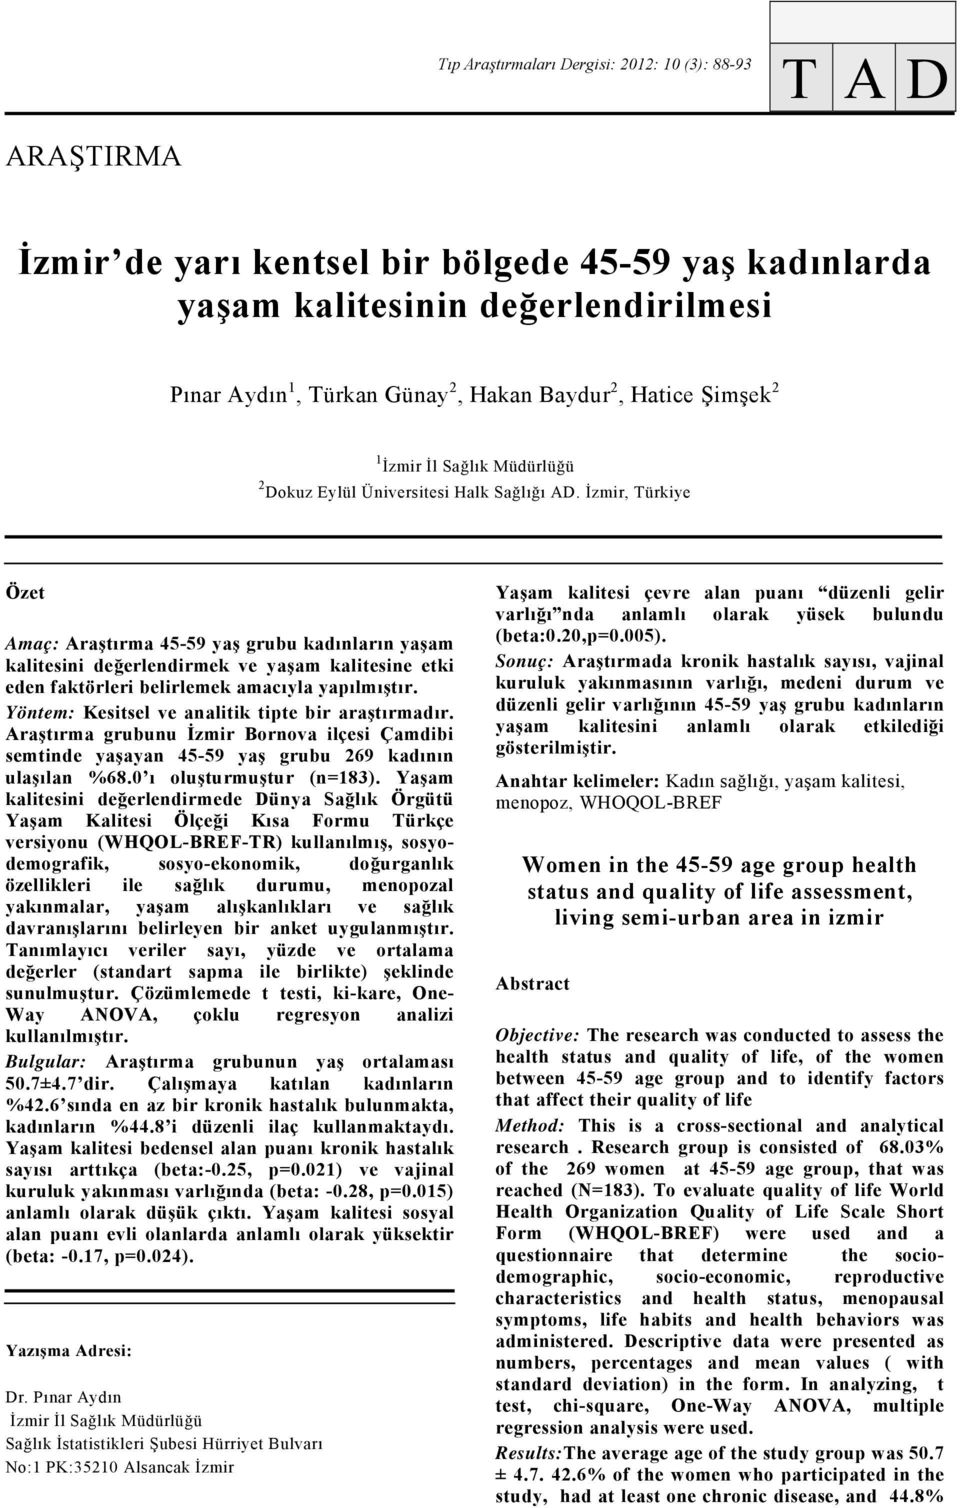 İzmir, Türkiye Özet Aç: Araştır 45-59 yaş grubu kadınların yaşam kalitesini değerlendirmek ve yaşam kalitesine etki eden faktörleri belirlemek acıyla yapılmıştır.